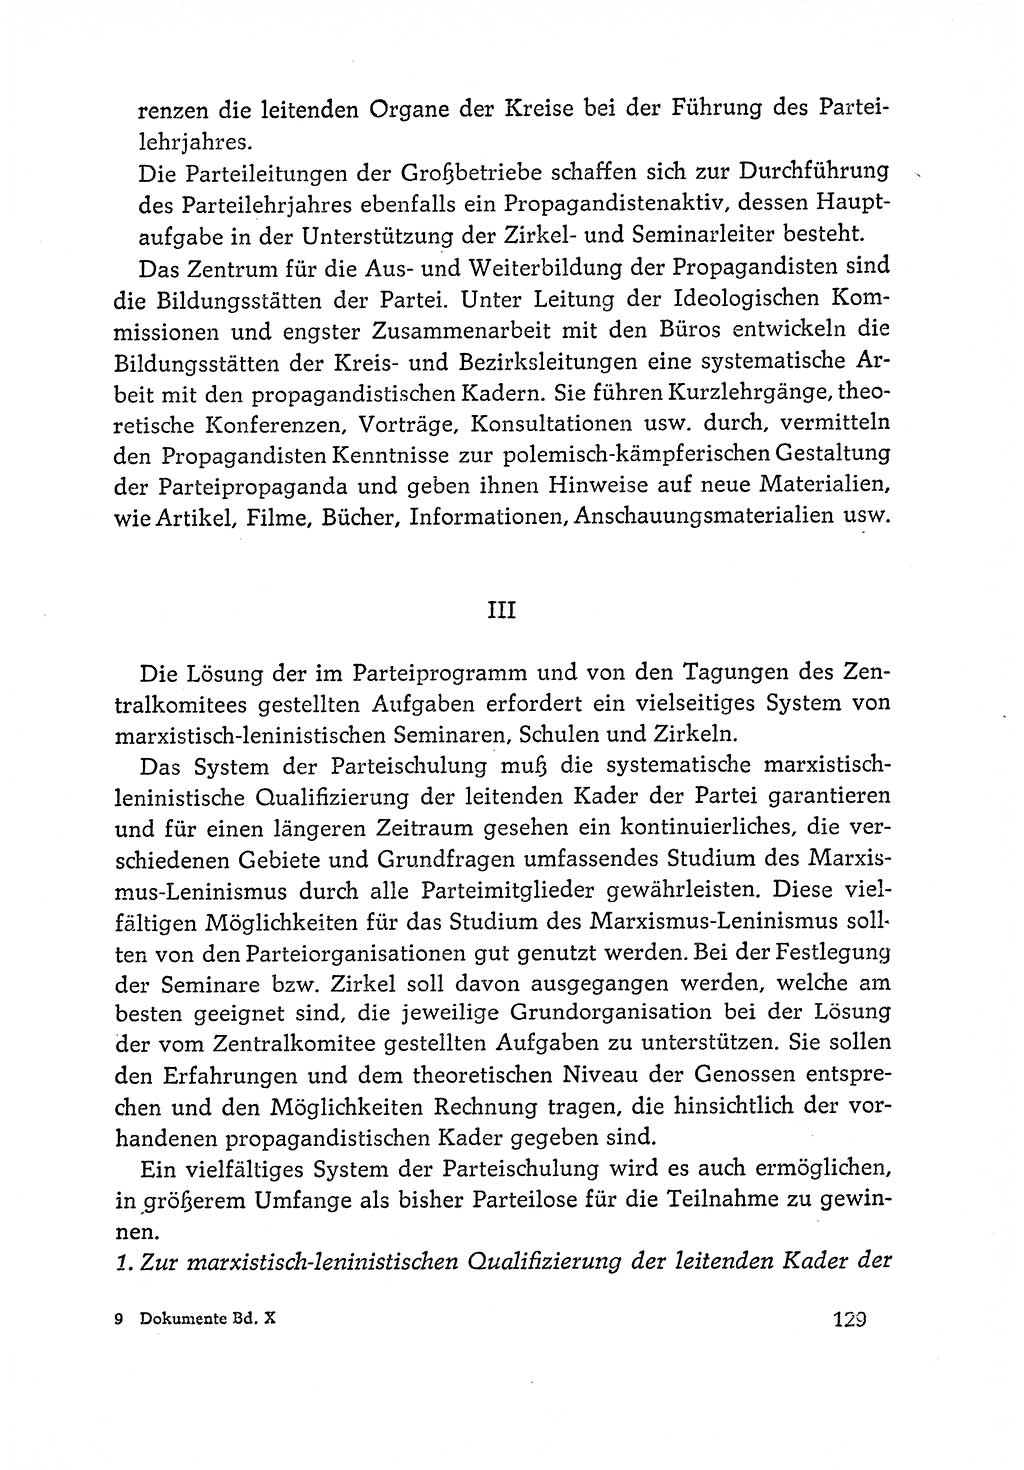 Dokumente der Sozialistischen Einheitspartei Deutschlands (SED) [Deutsche Demokratische Republik (DDR)] 1964-1965, Seite 129 (Dok. SED DDR 1964-1965, S. 129)